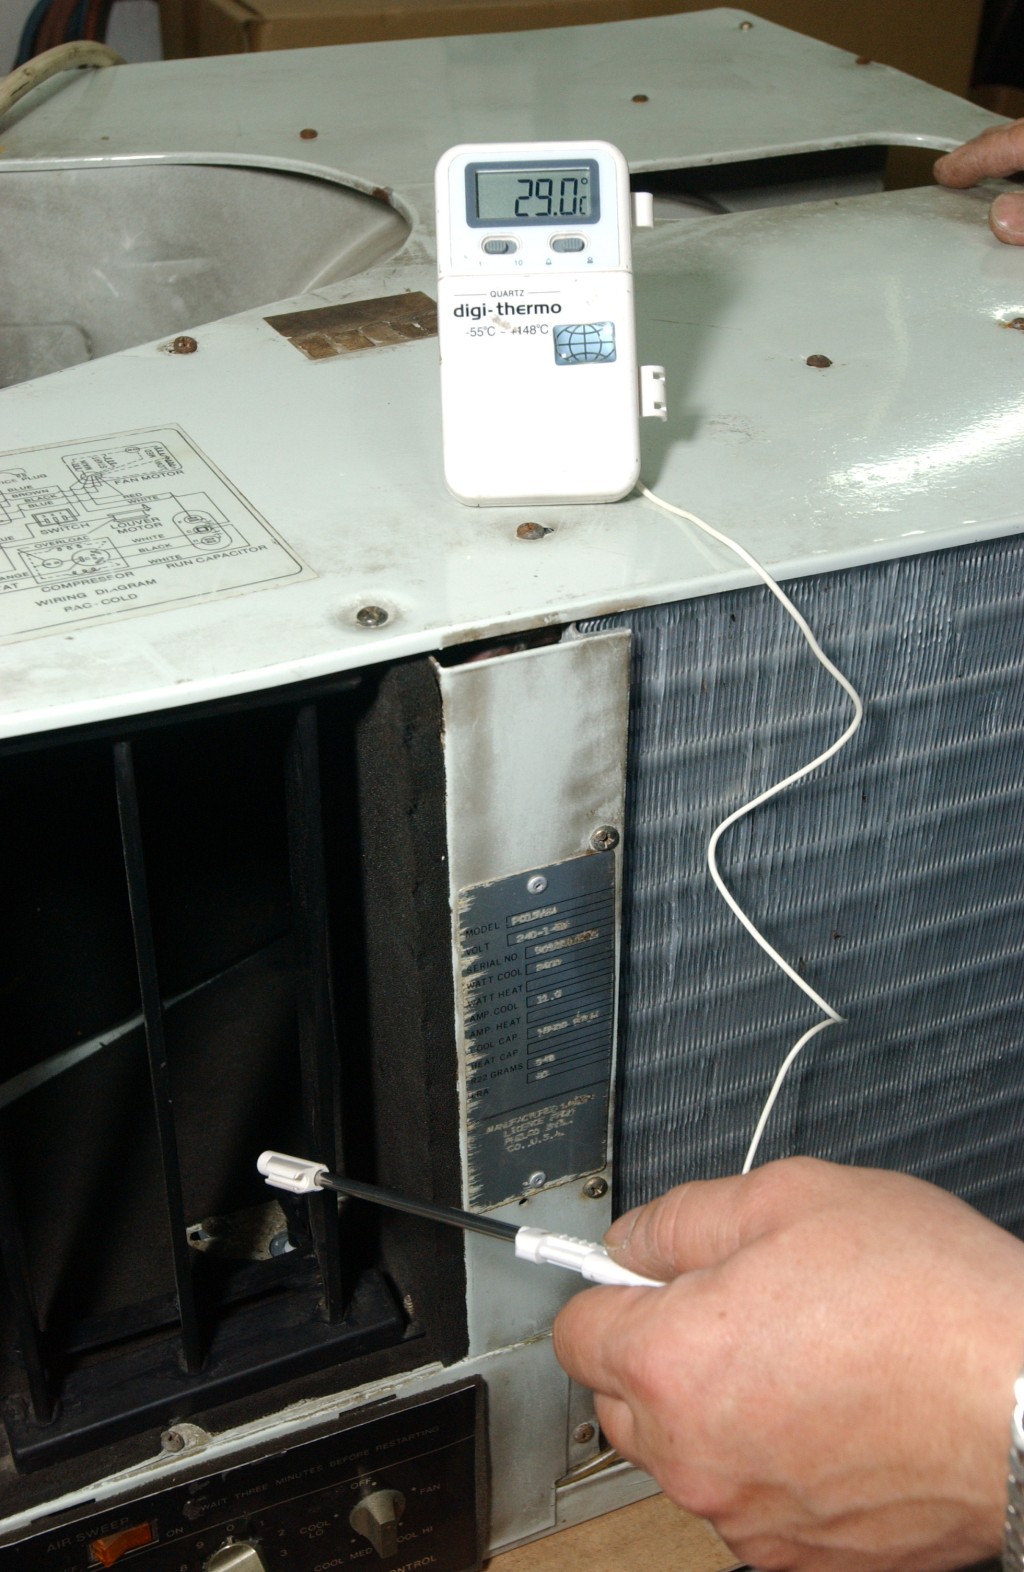 想冷气机操作正常及安全使用，最好定期请专人上门检查，以及清洗机内一些我们接触不到的零件，可保冷气机长久使用。